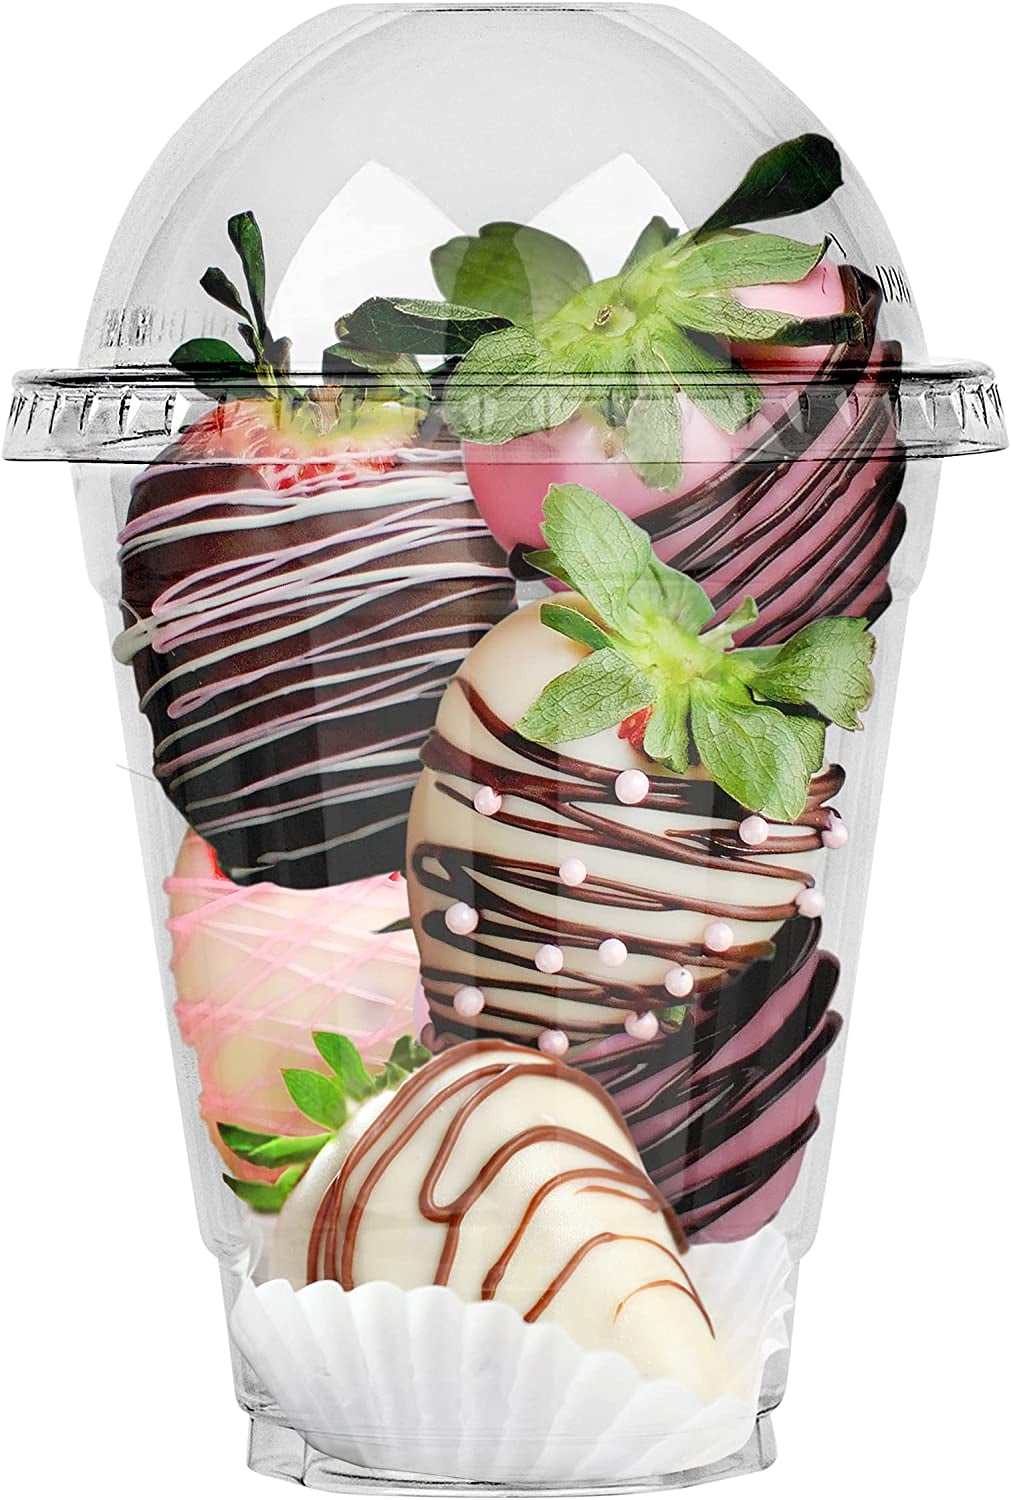 Details about   9 oz Plastic Dessert Cups Dome Flat or no lids Slush Fruit Sweets no hole 